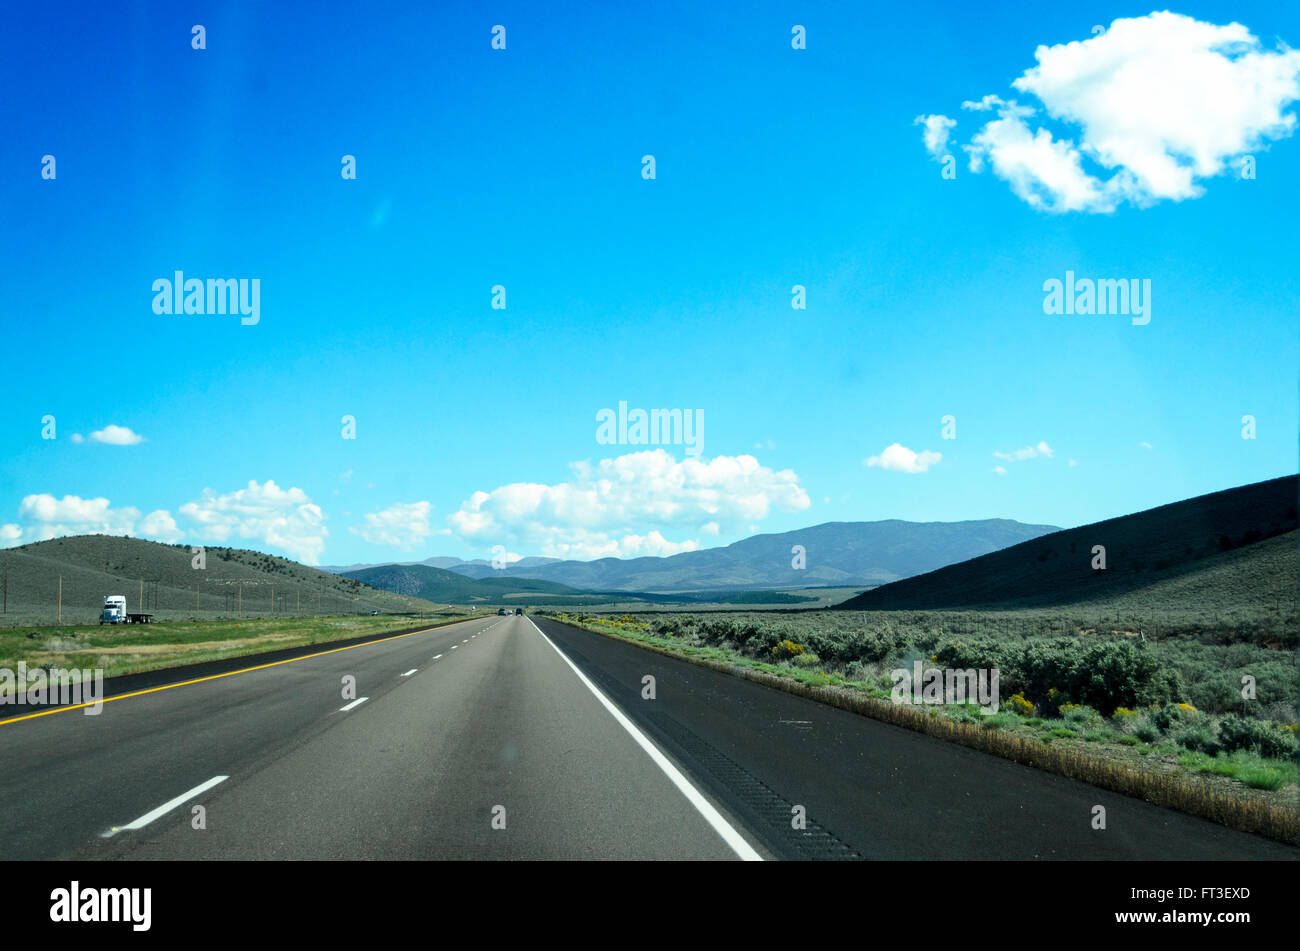 Autobahn durch die offene Landschaft, blauer Himmel und weiße Wolken. Stockfoto